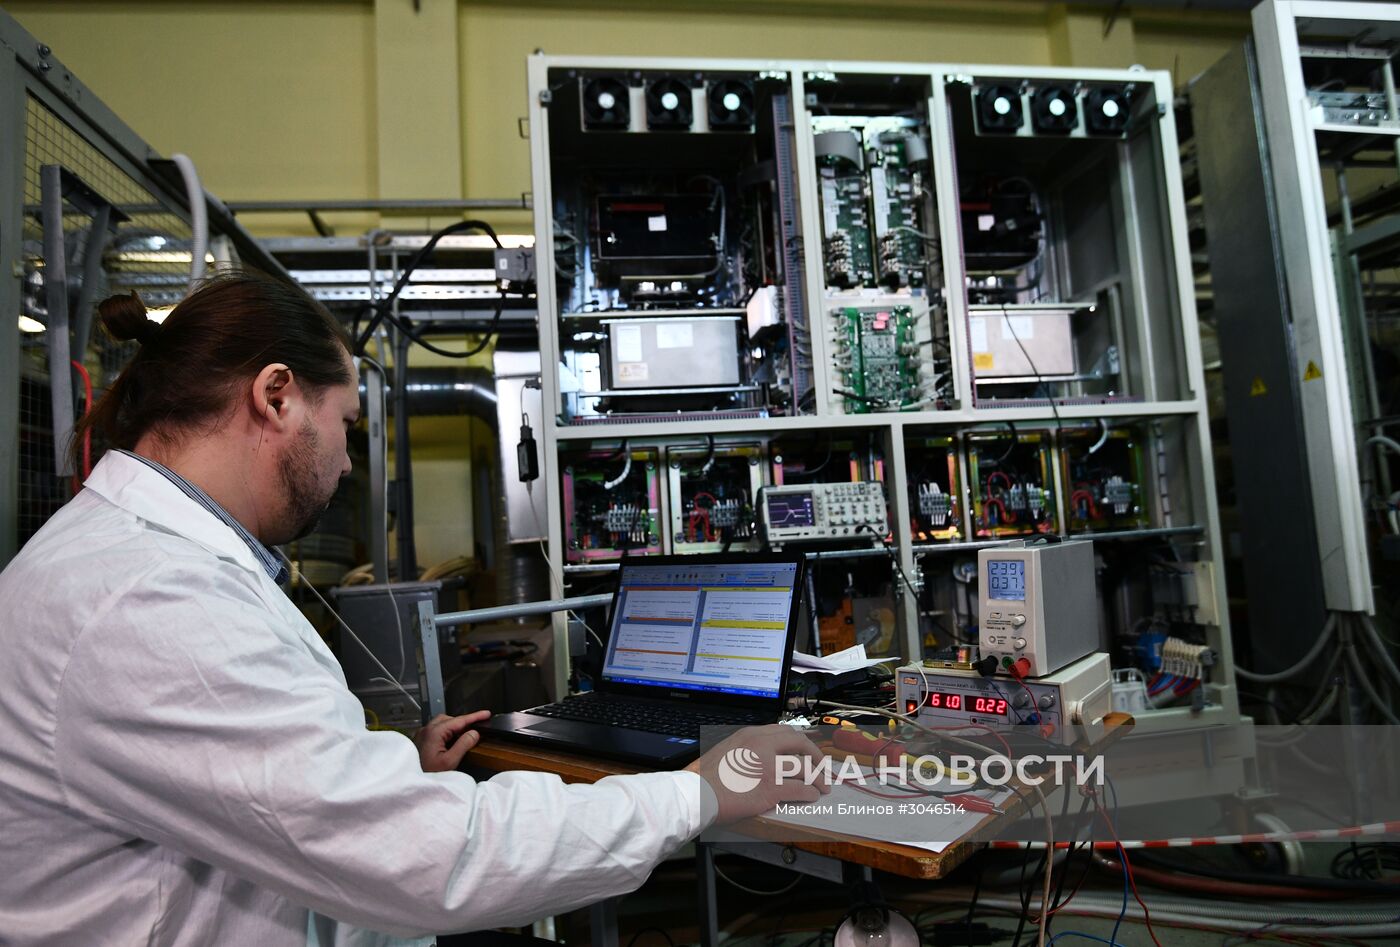 Мэр Москвы С. Собянин посетил технополис "Связь инжиниринг"